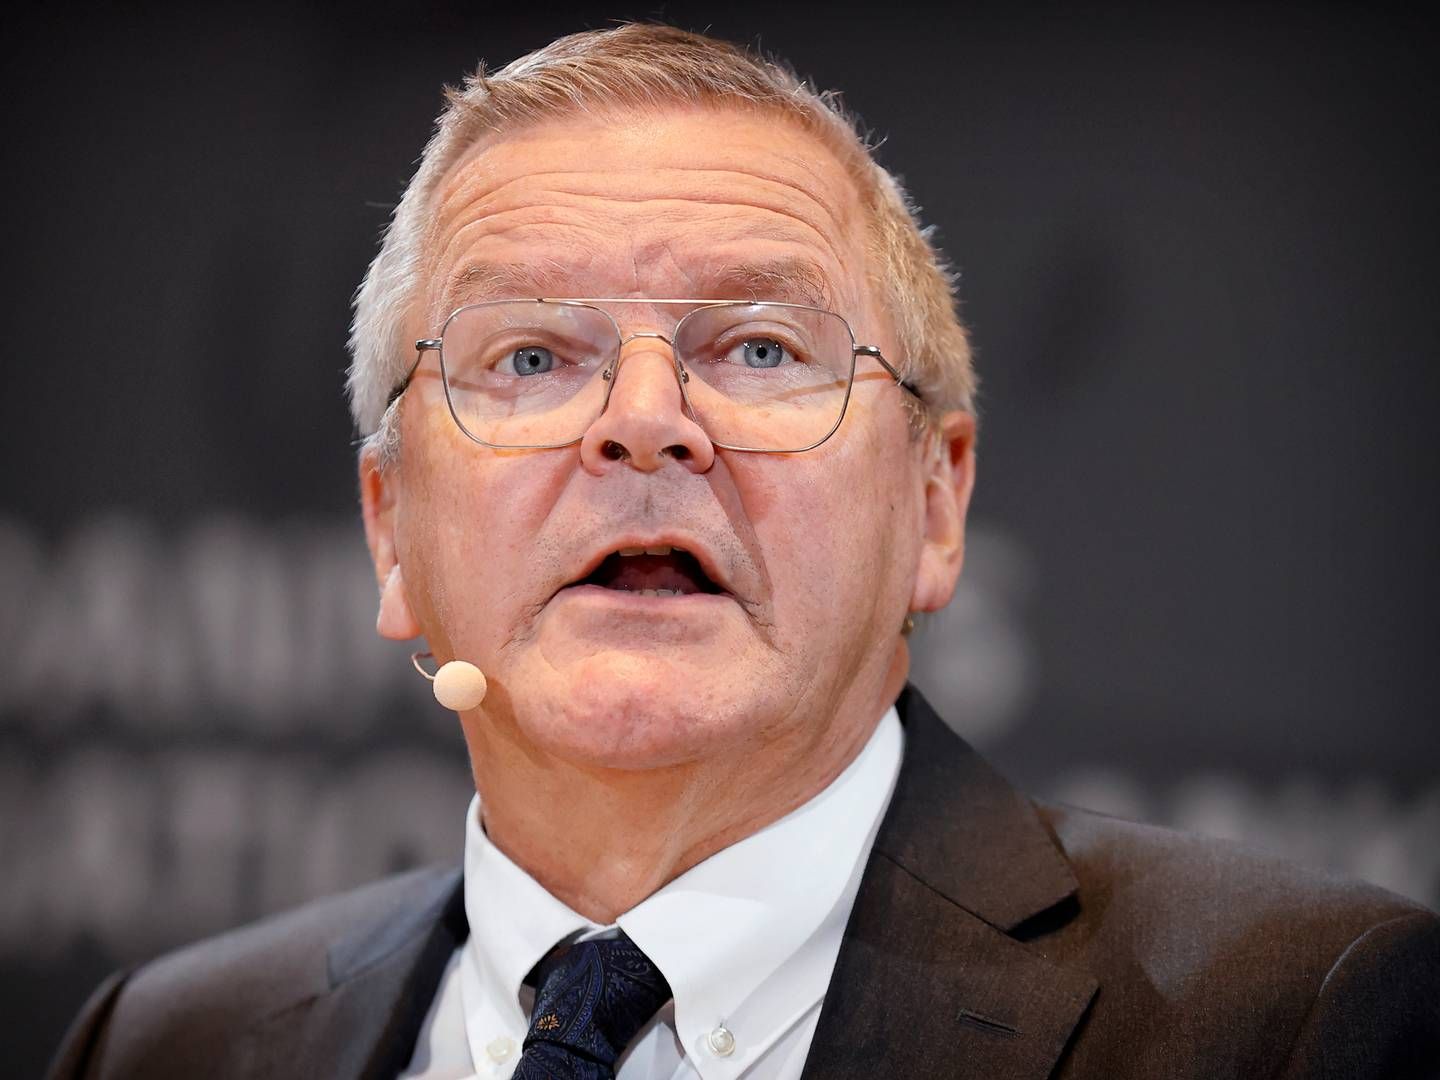 Lars Rohde stopper ved udgangen af januar som nationalbankdirektør for at gå på pension. Siden midten af 1980'erne har han befundet sig i toppen af den danske finanssektor. | Foto: Jens Dresling